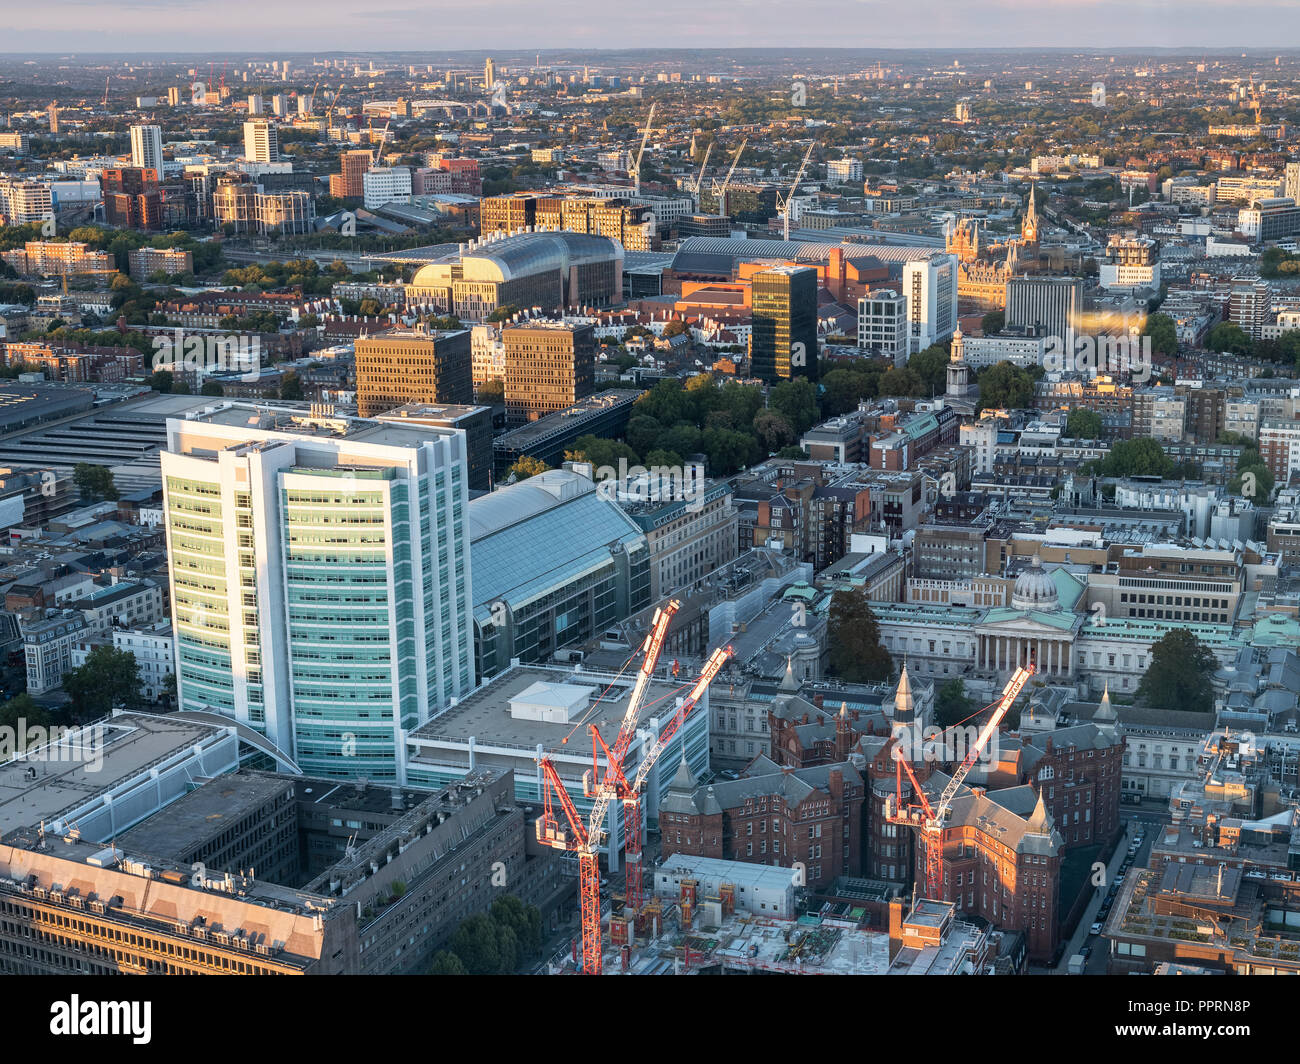 Il 23 settembre 2018, Open House London, BT Tower piattaforma di osservazione, guardando verso est lungo la Euston Road con UCL Hospital & Kings Cross nella vista Foto Stock